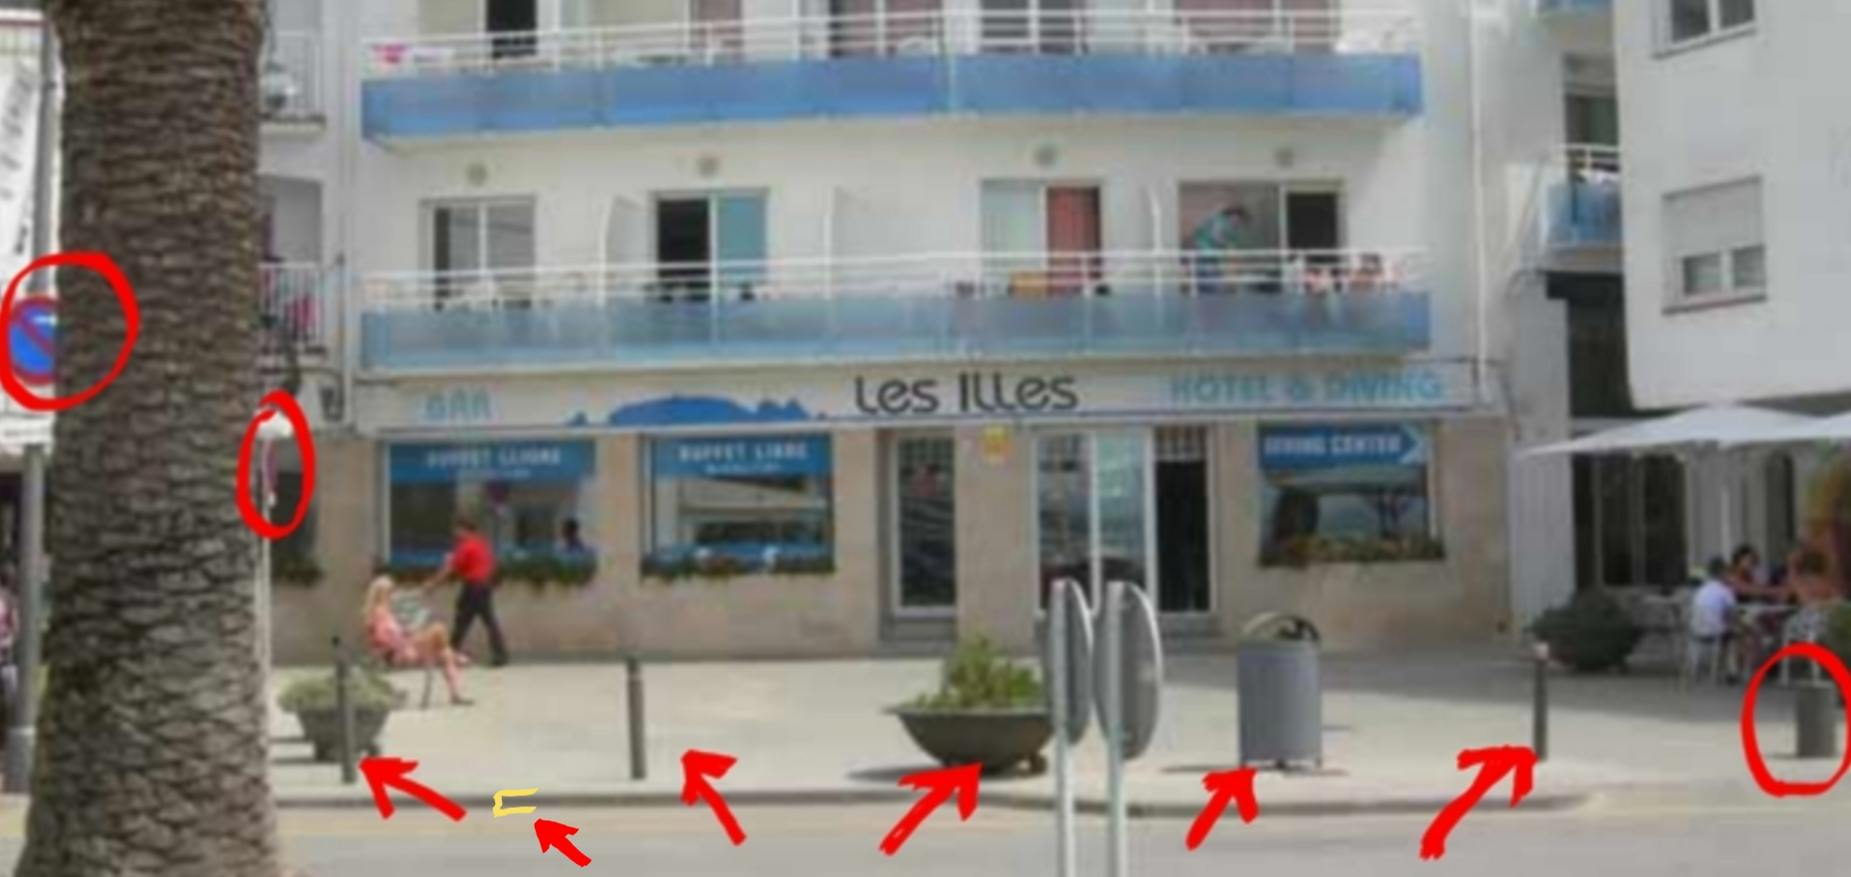 fortificamenta de pilones anti-cotxes i camions, Hotel les Illes, Estartit.